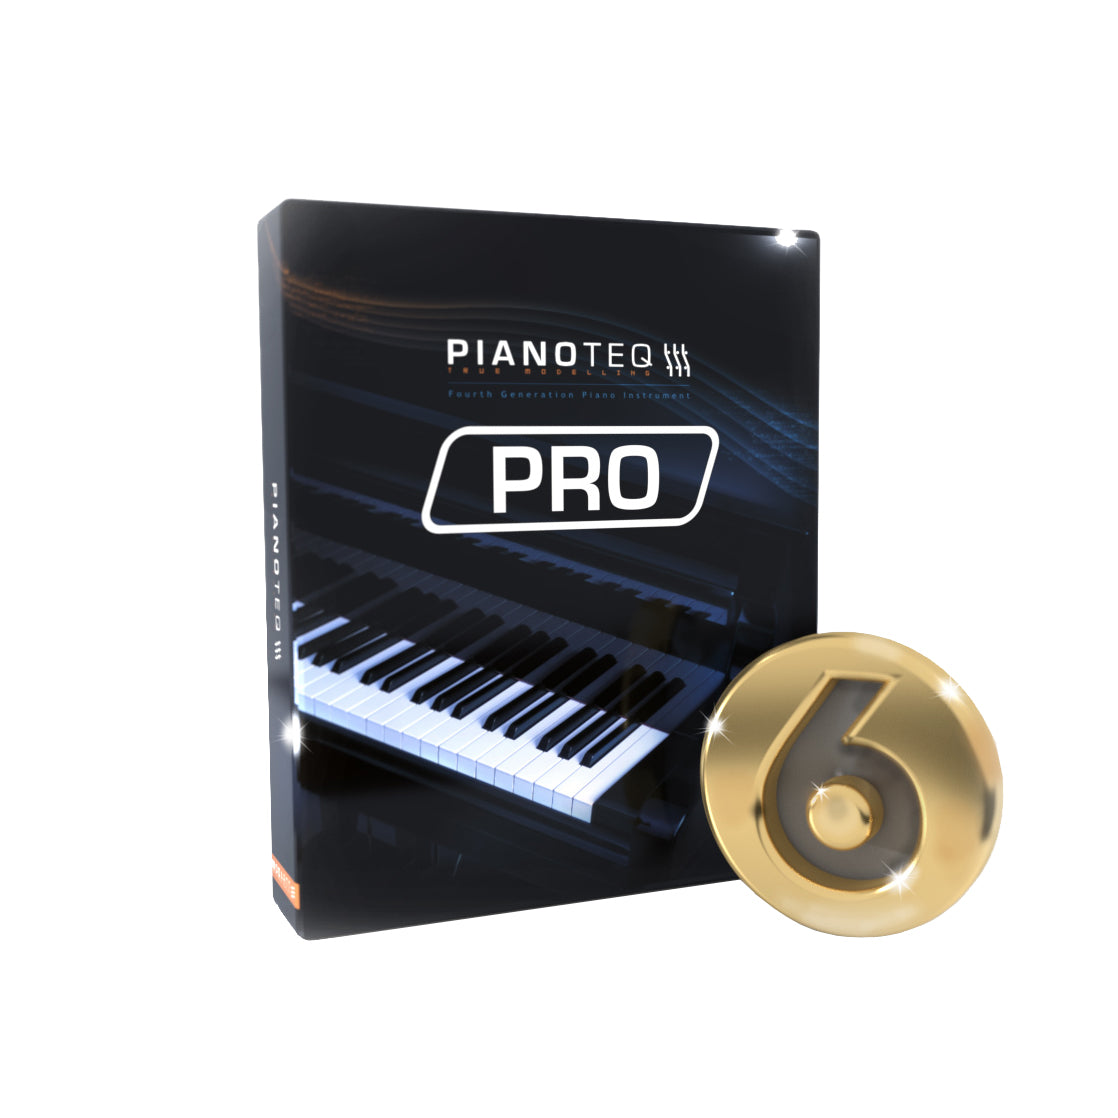 Pianoteq 7 Pro Virtual Instrument Bundle